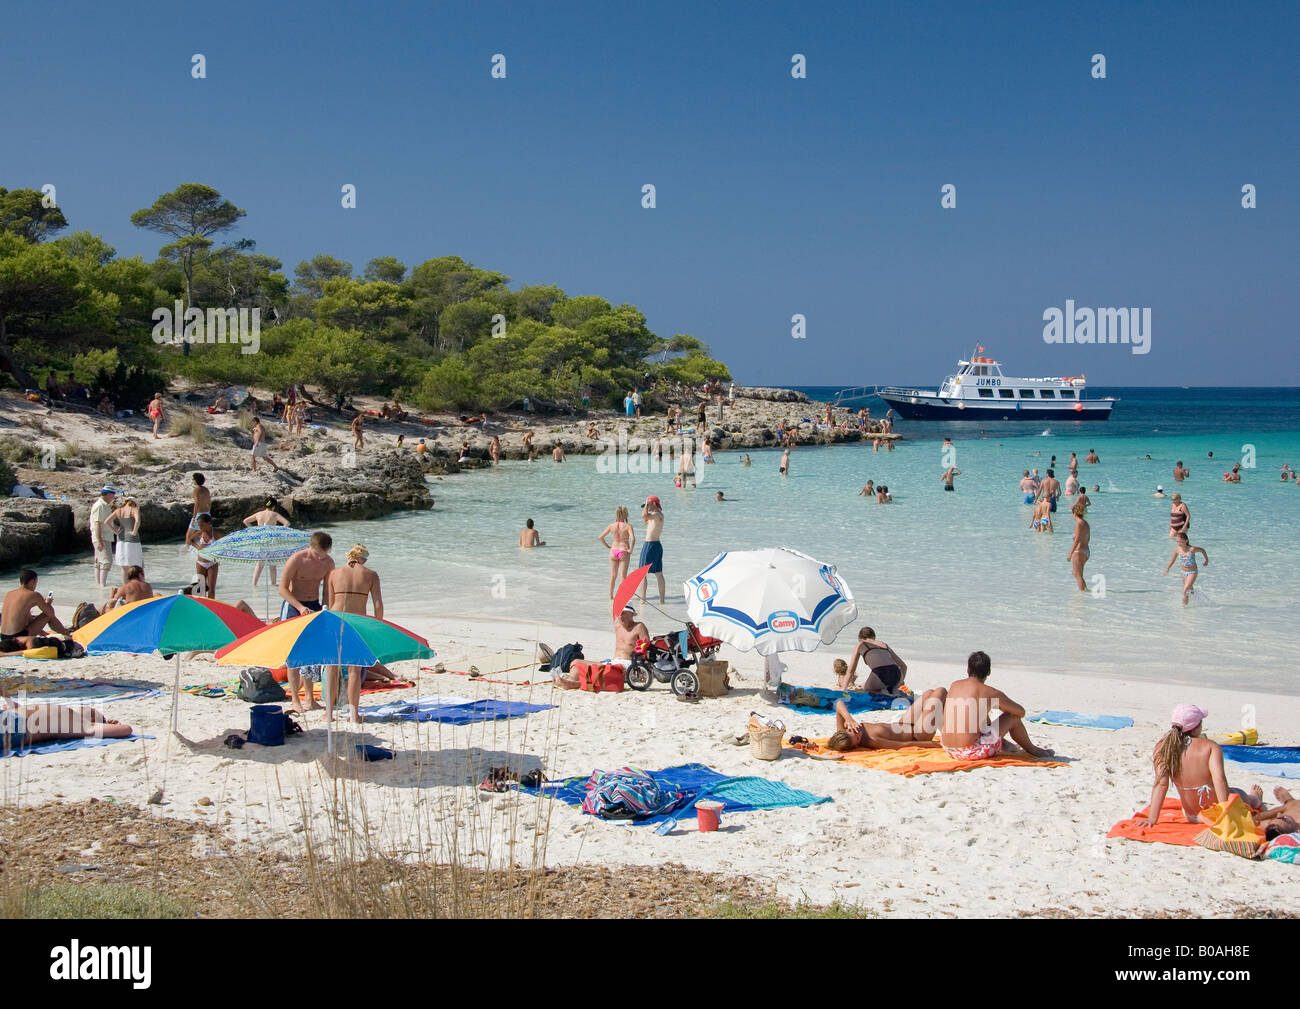 Los veraneantes disfrutando del sol, playa y mar cristalino en el Arenal de Son Saura, Menorca, Islas Ballearic, España. Foto de stock